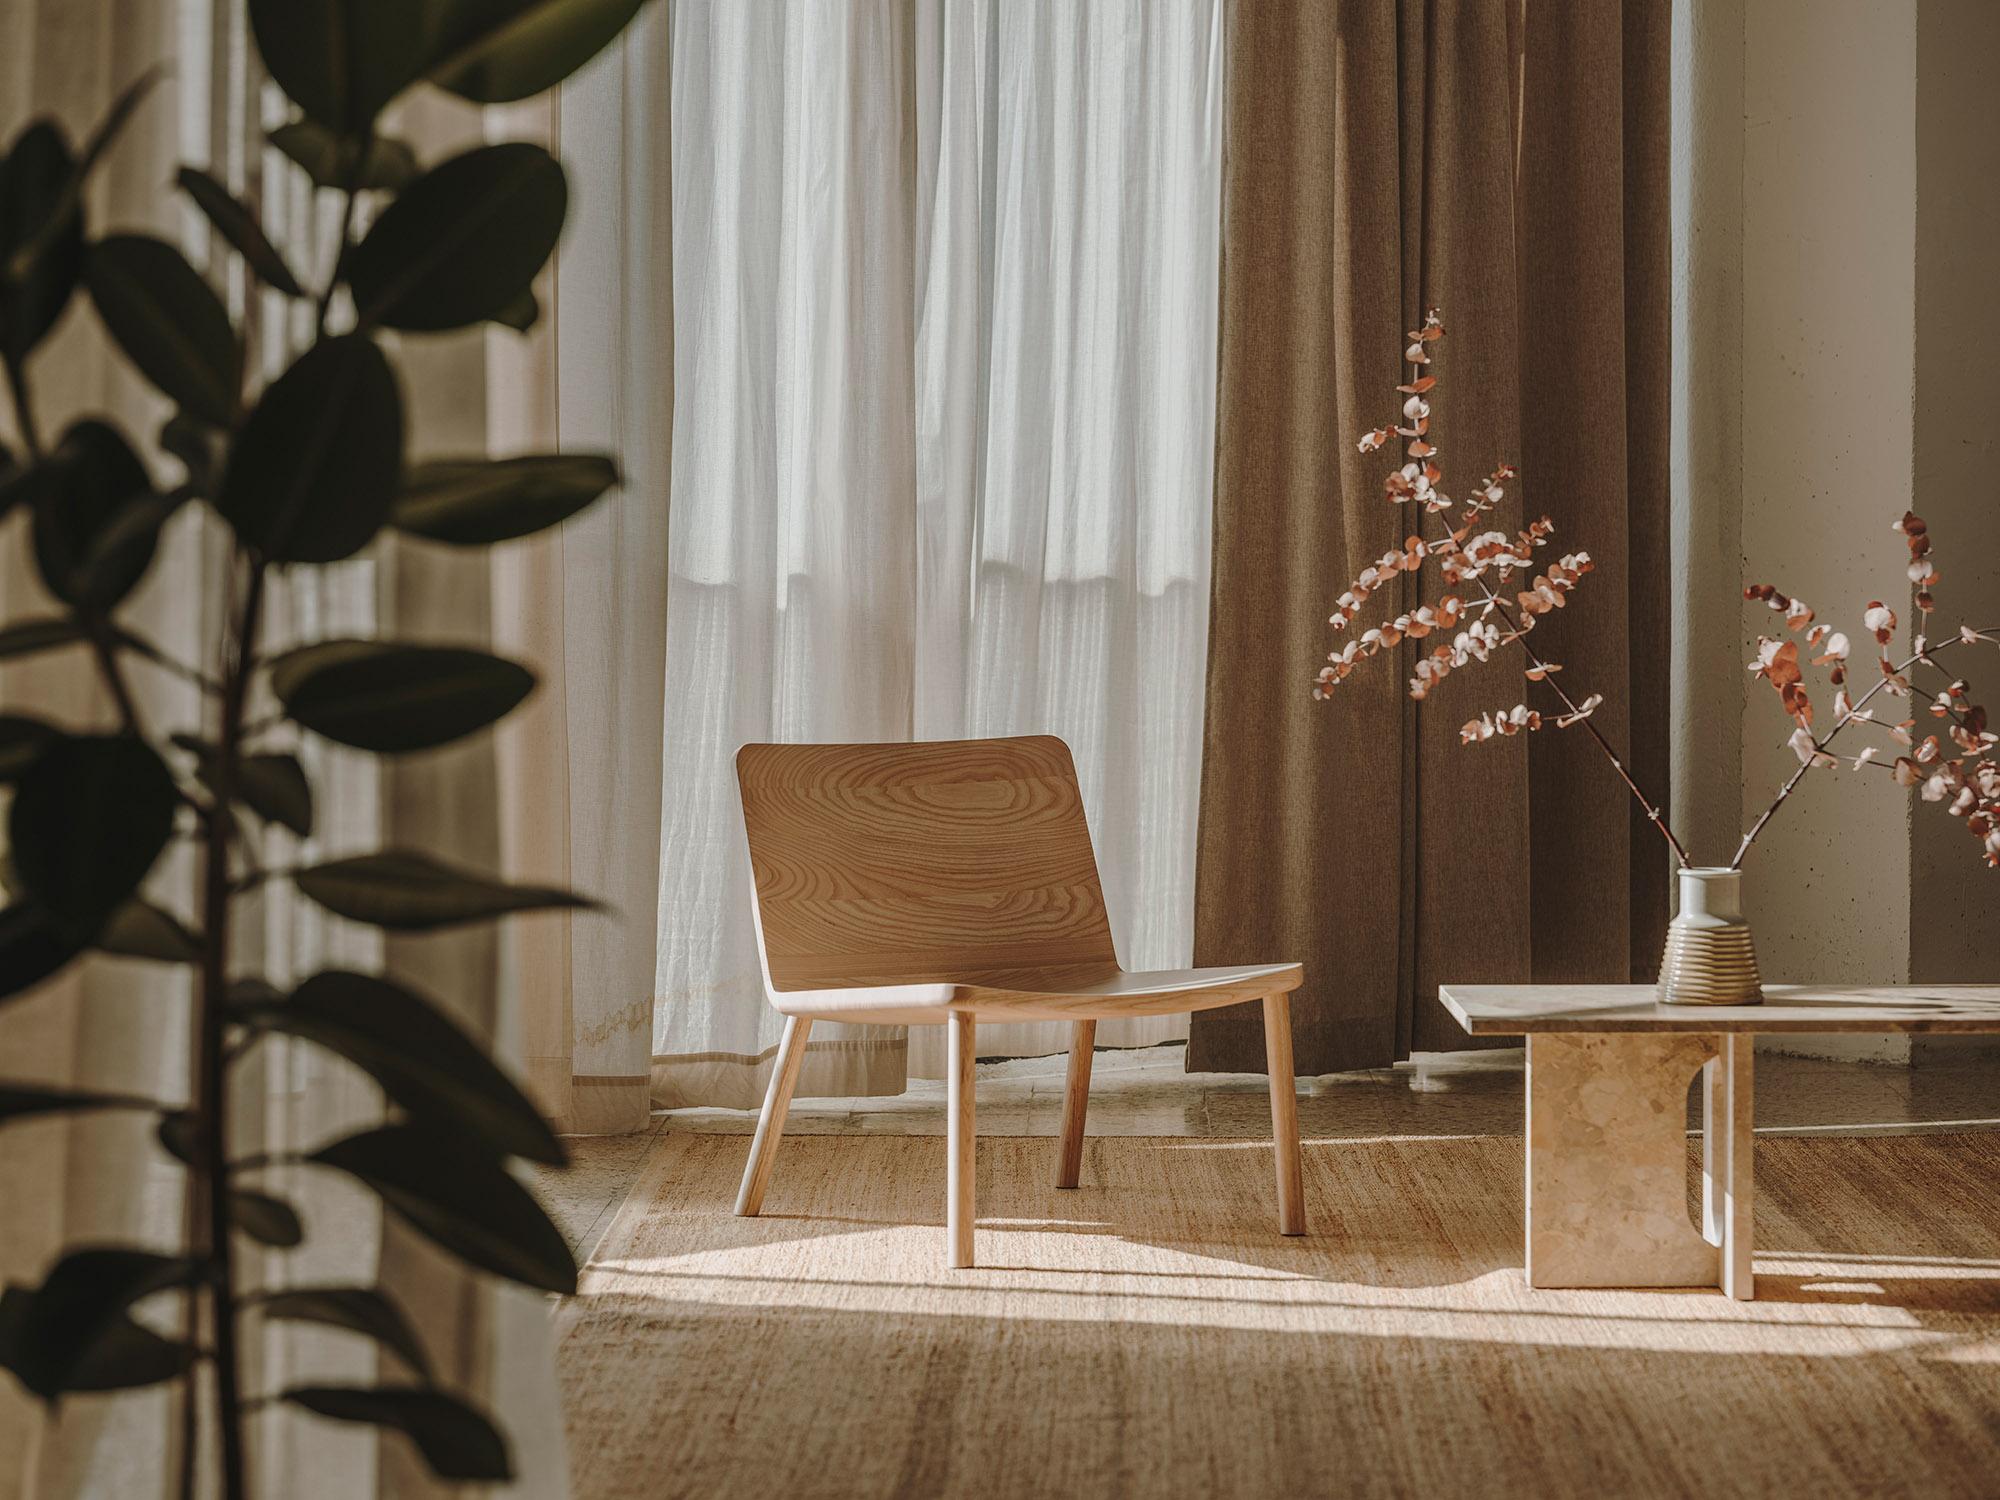 Conçue pour avoir une présence apaisante et invitante, la chaise Allay allie artisanat et simplicité pour créer une pièce honnête, confortable et intemporelle. En s'engageant dans le processus de soustraction, les détails sont réduits pour créer une